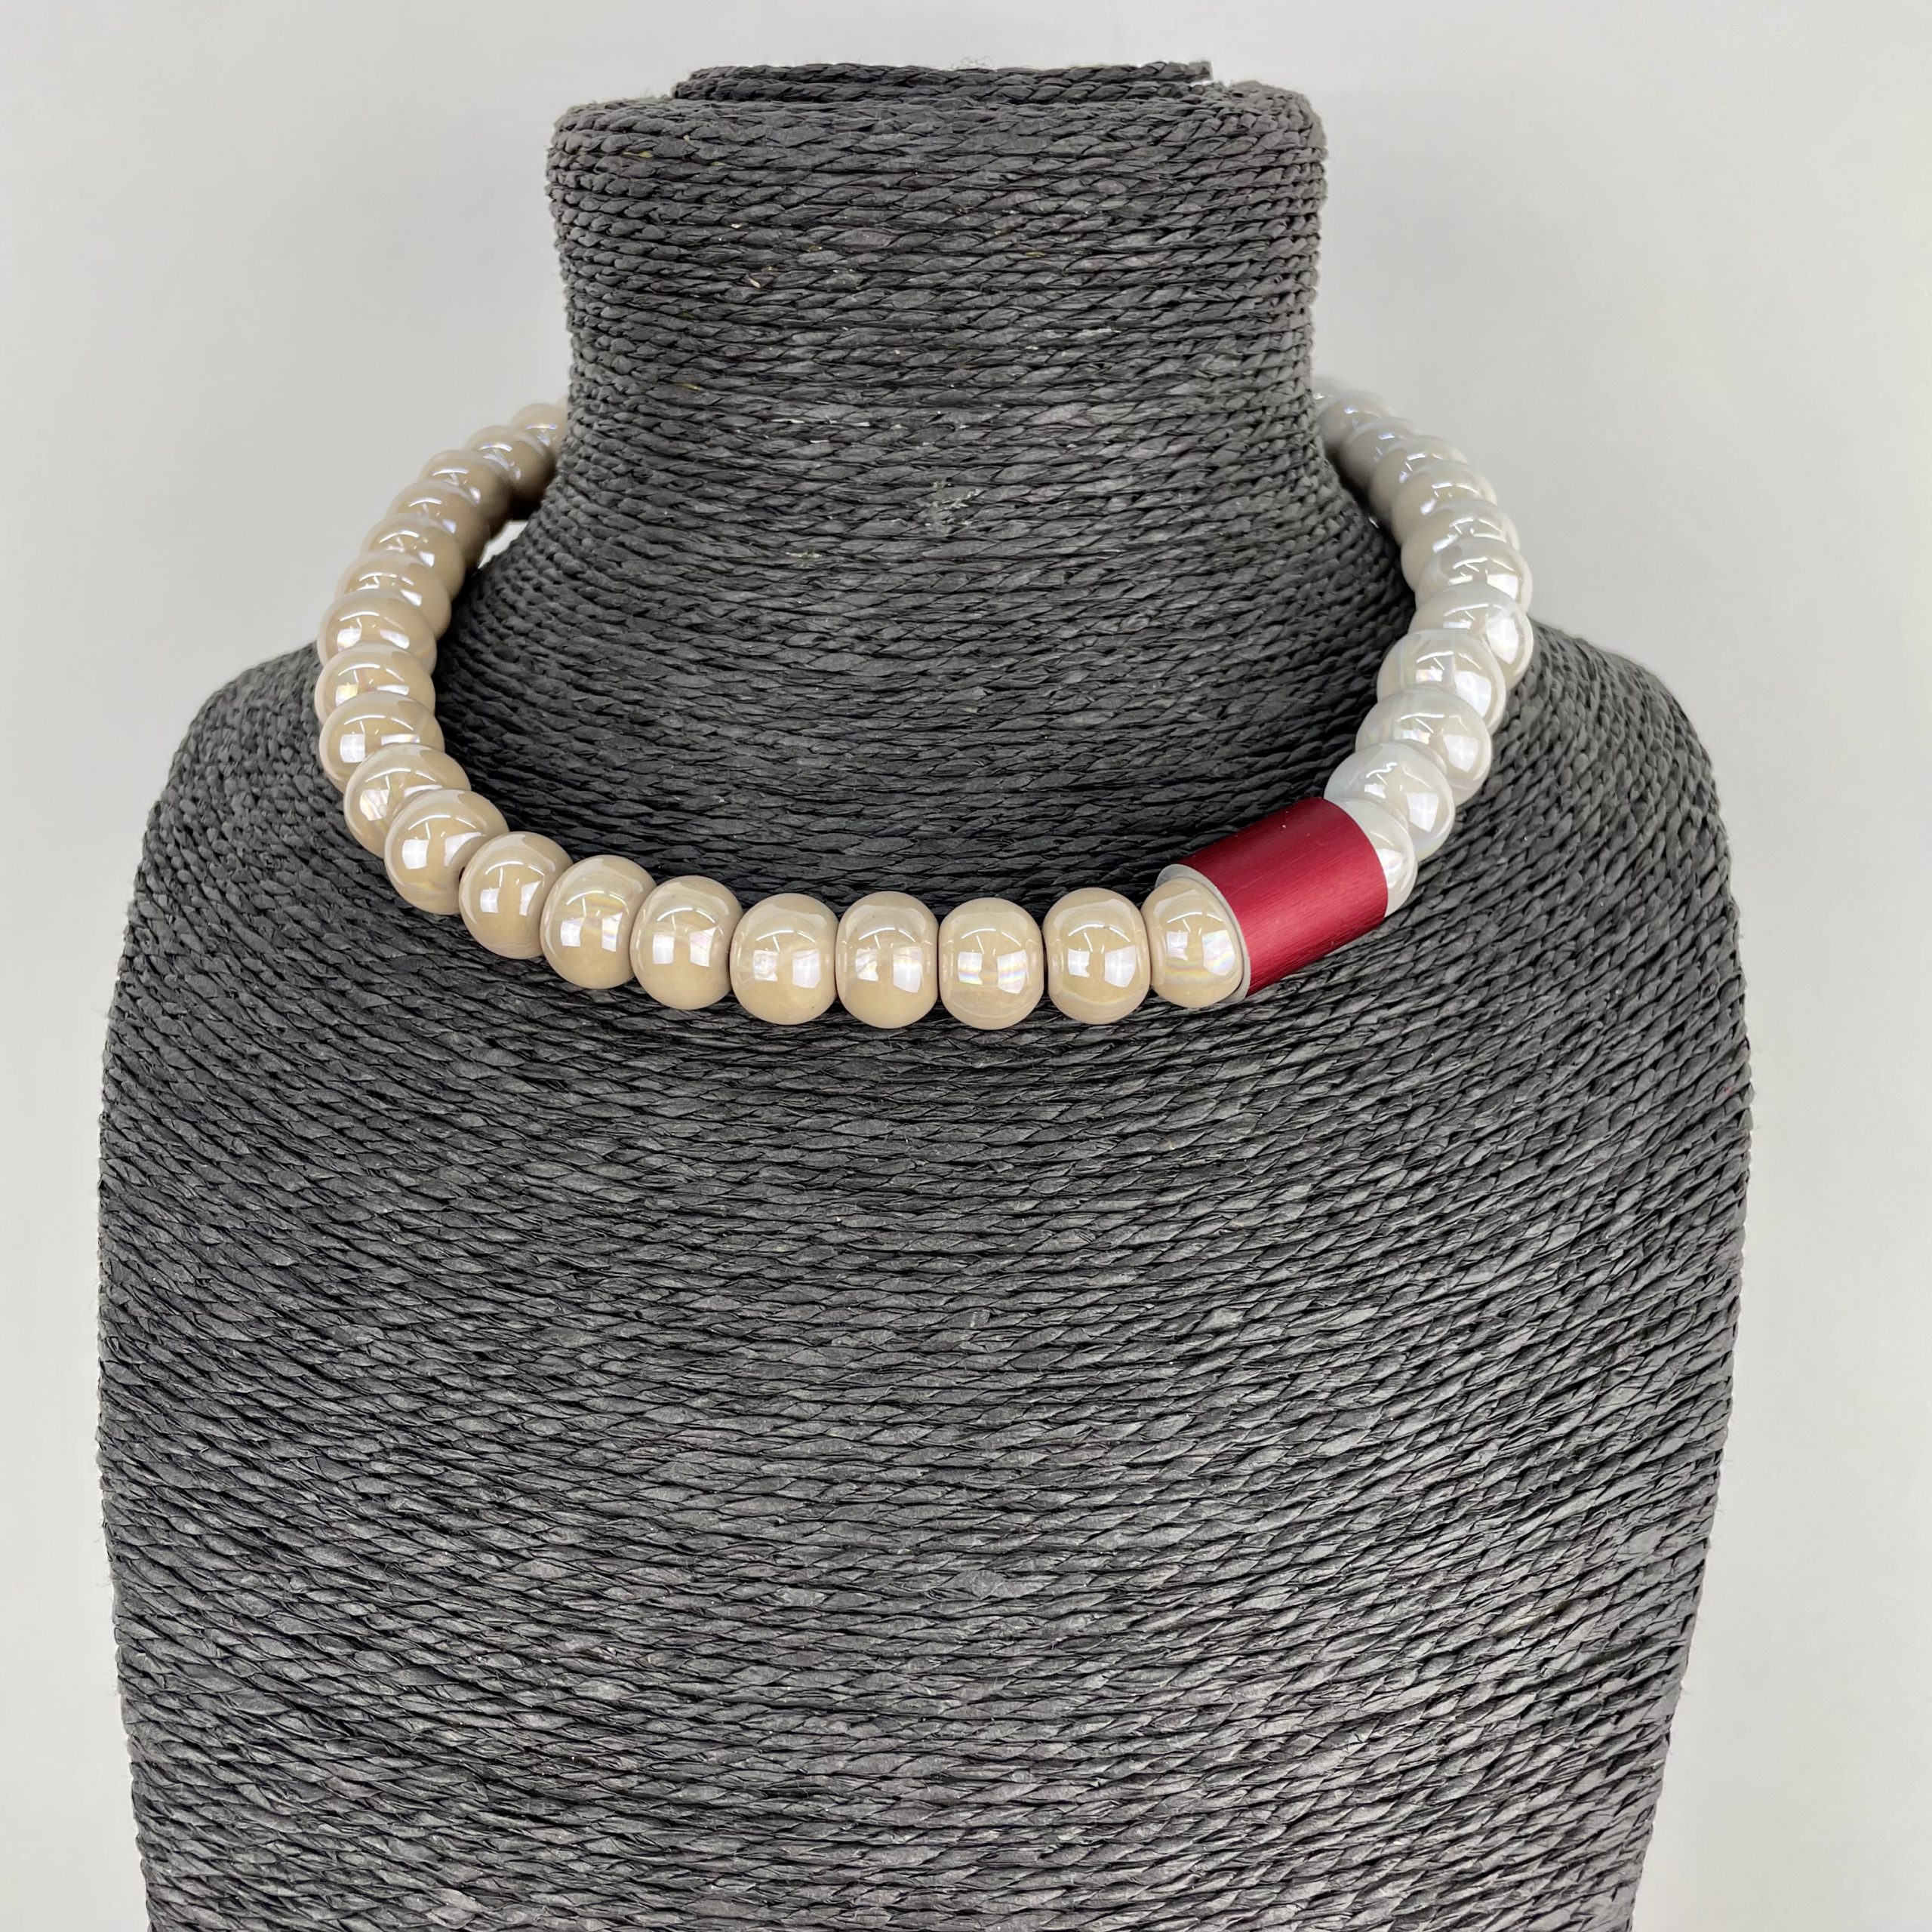 Christina Brampti Beige Necklace with Aluminium and Ceramic Beads